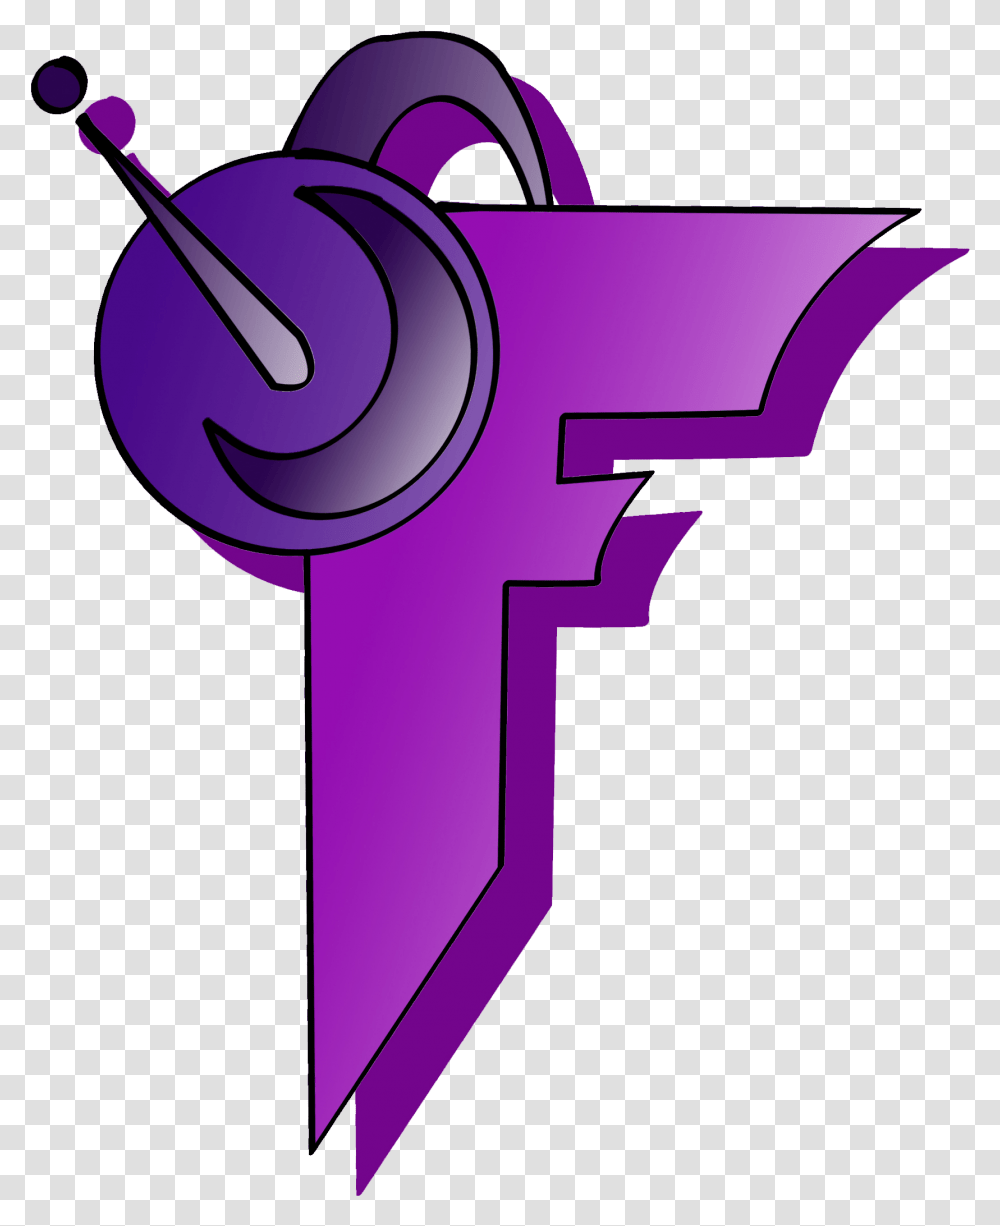 Purple S Gaming Logo Logodix Gaming Cool F Logos, Cross, Symbol, Machine, Appliance Transparent Png